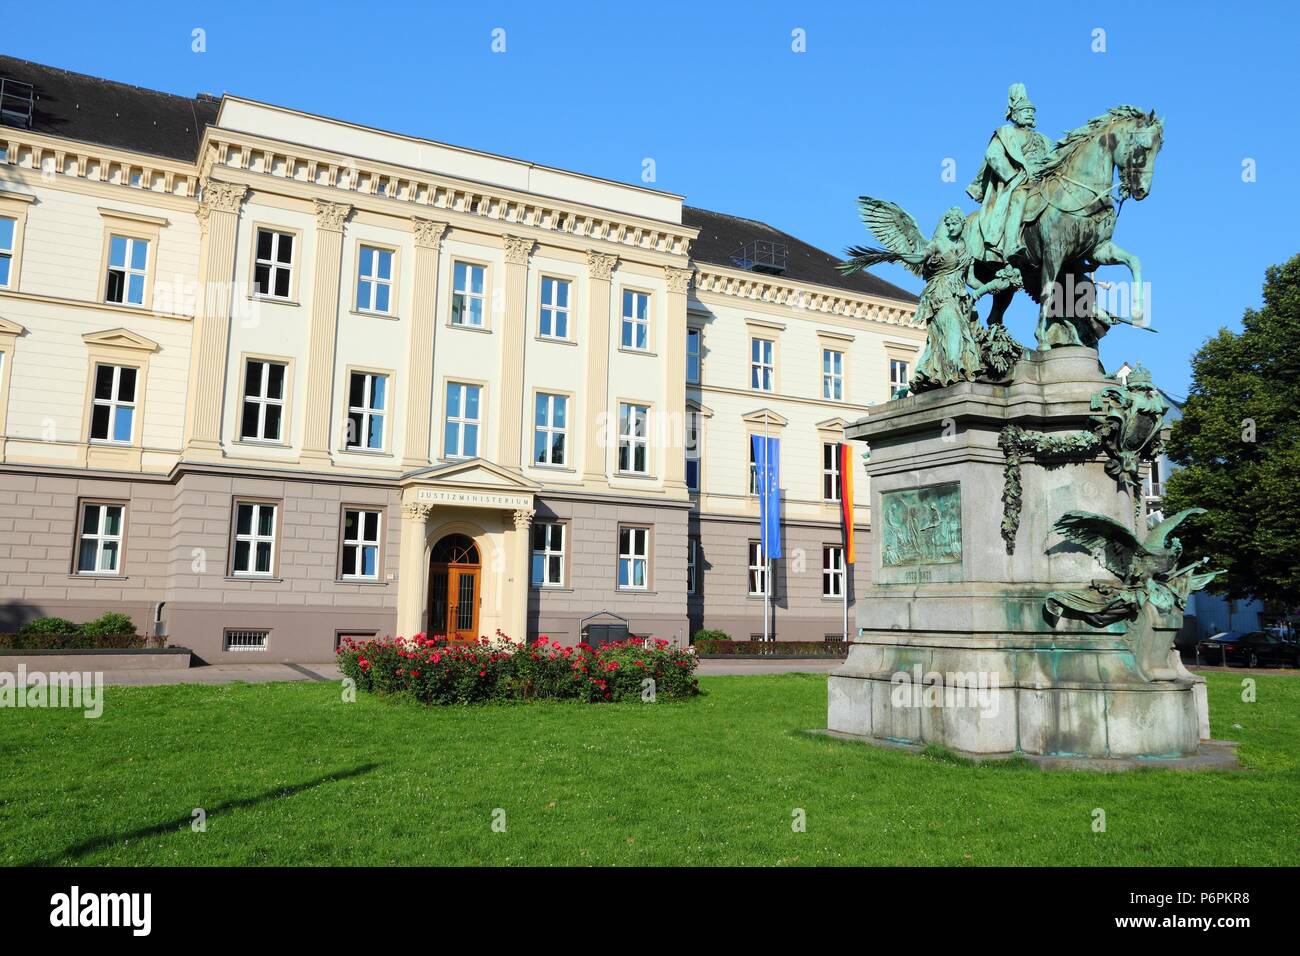 Dusseldorf - città della Renania settentrionale-Vestfalia regione della Germania. Ministero della Giustizia del Land Renania settentrionale-Vestfalia. Foto Stock